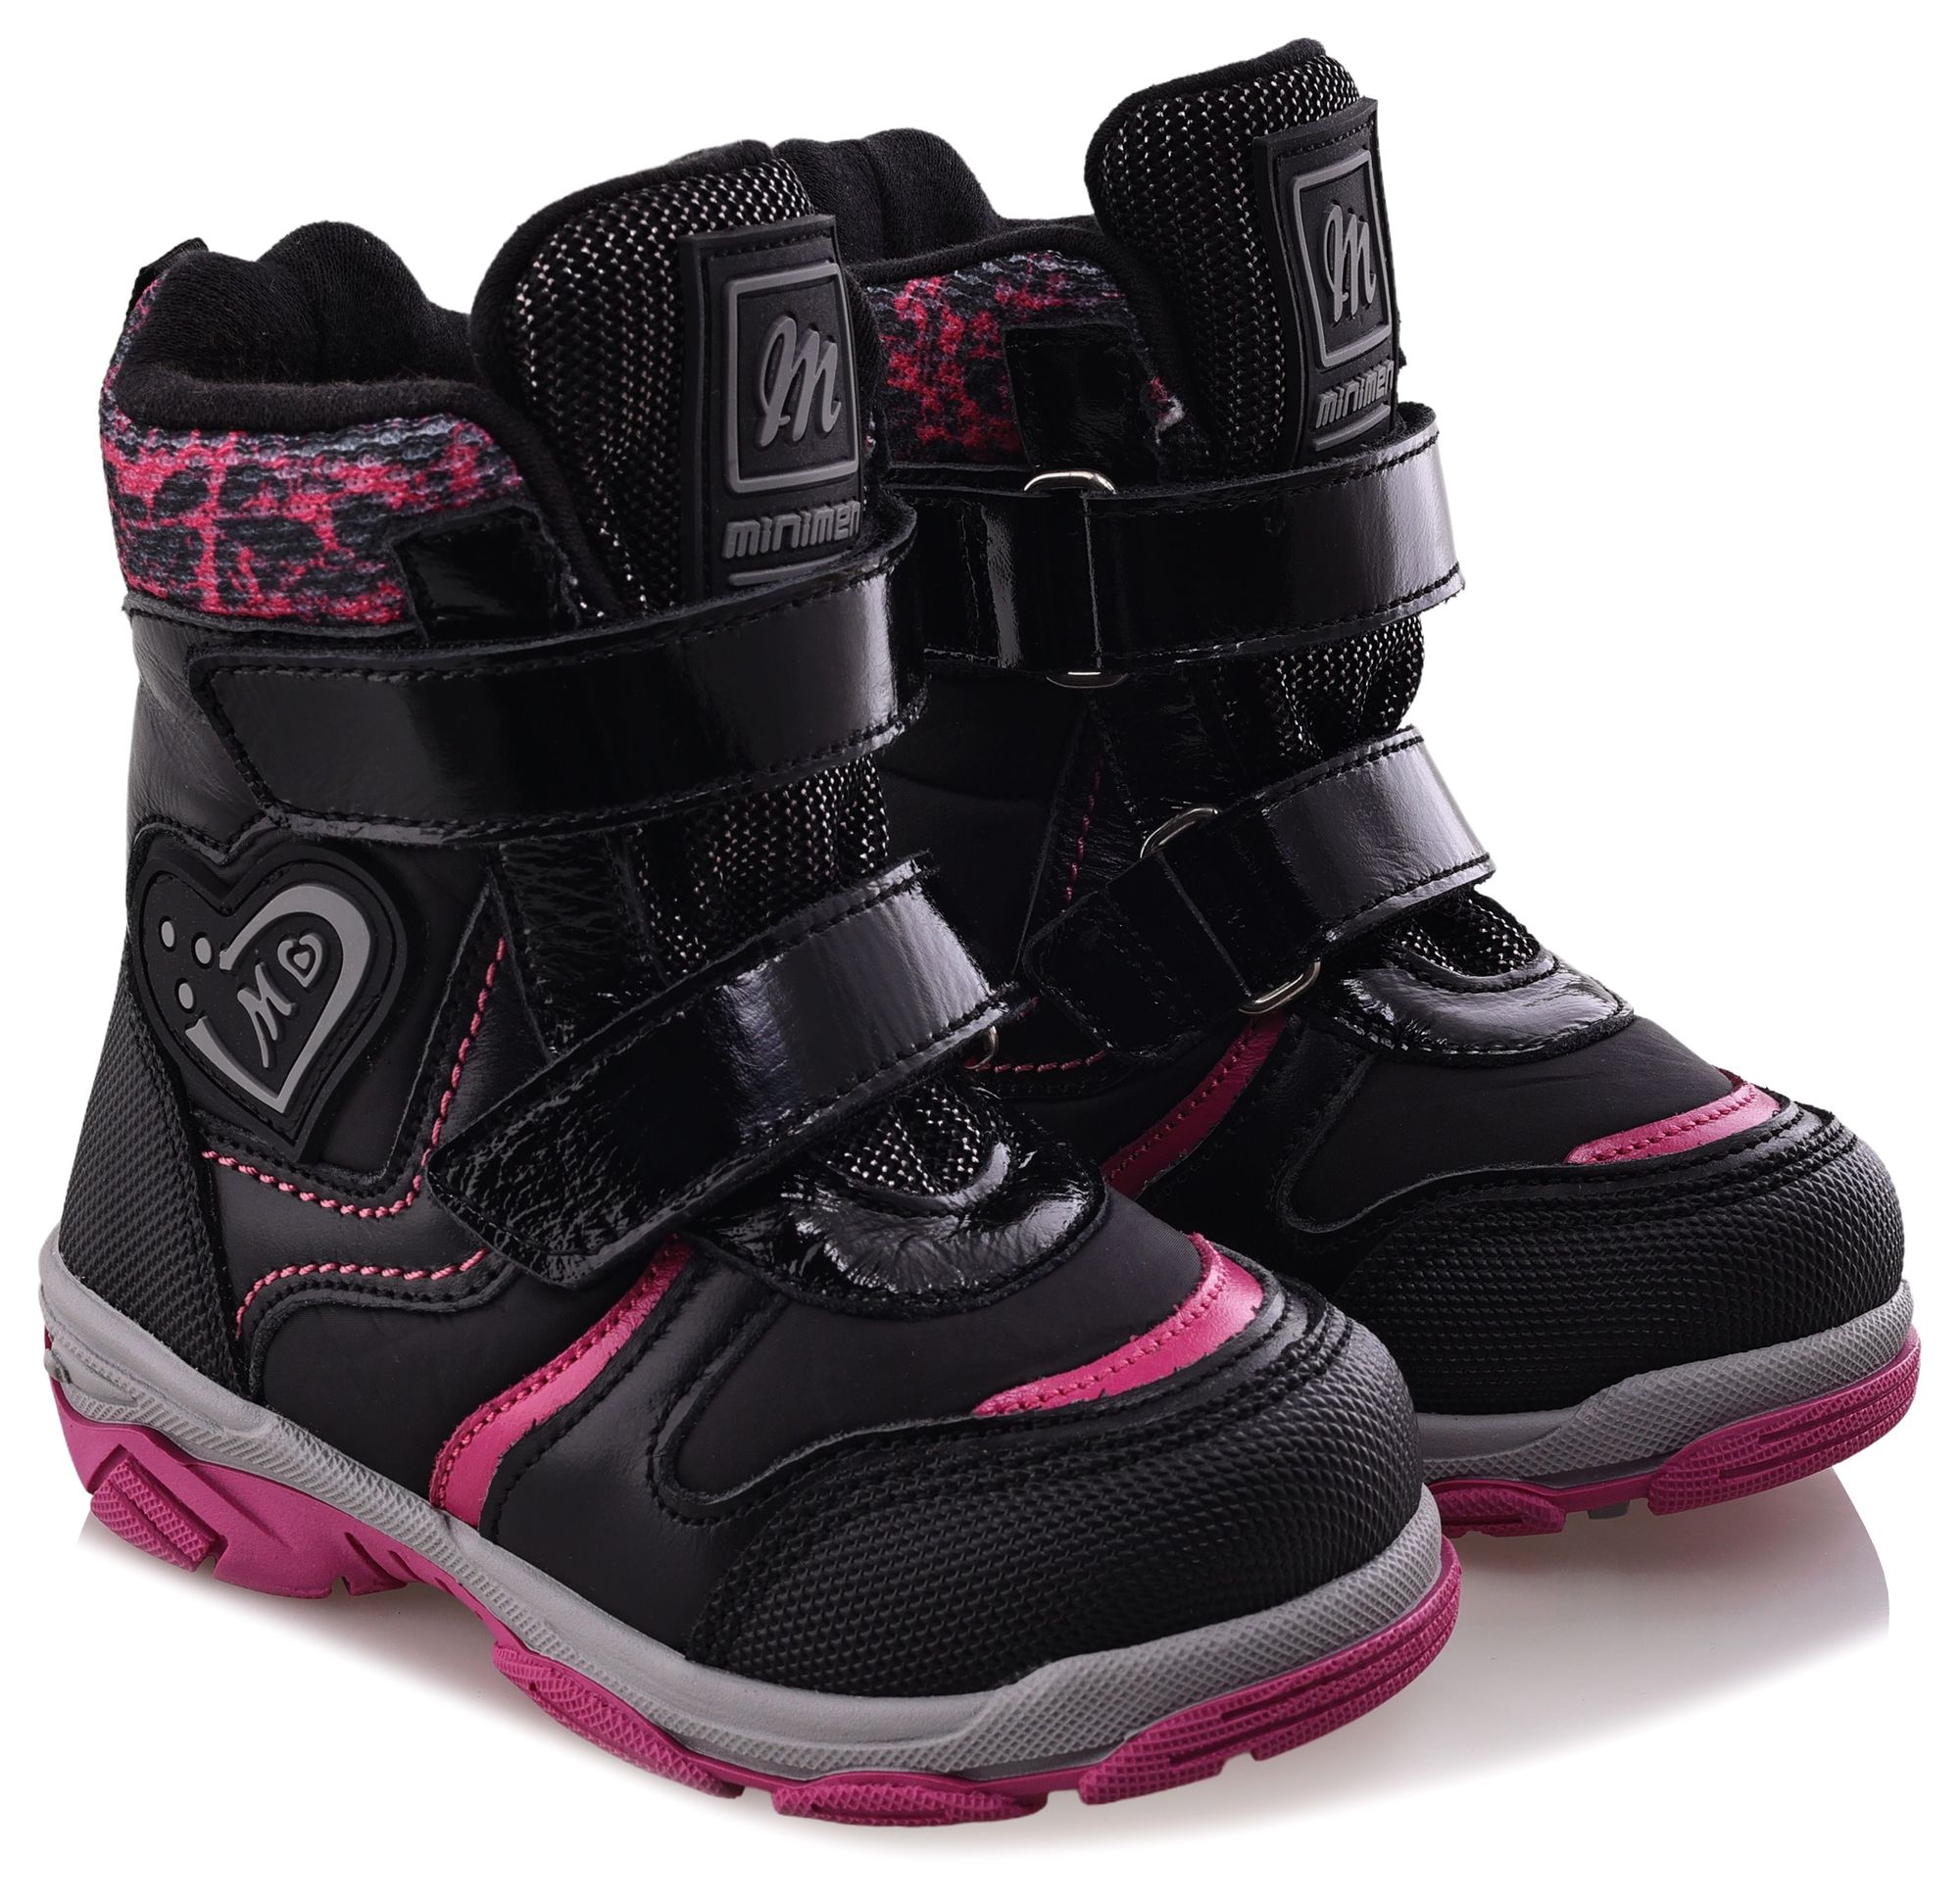 Ботинки Minimen для девочек, чёрные, размер 30, 2656-53-23B-01